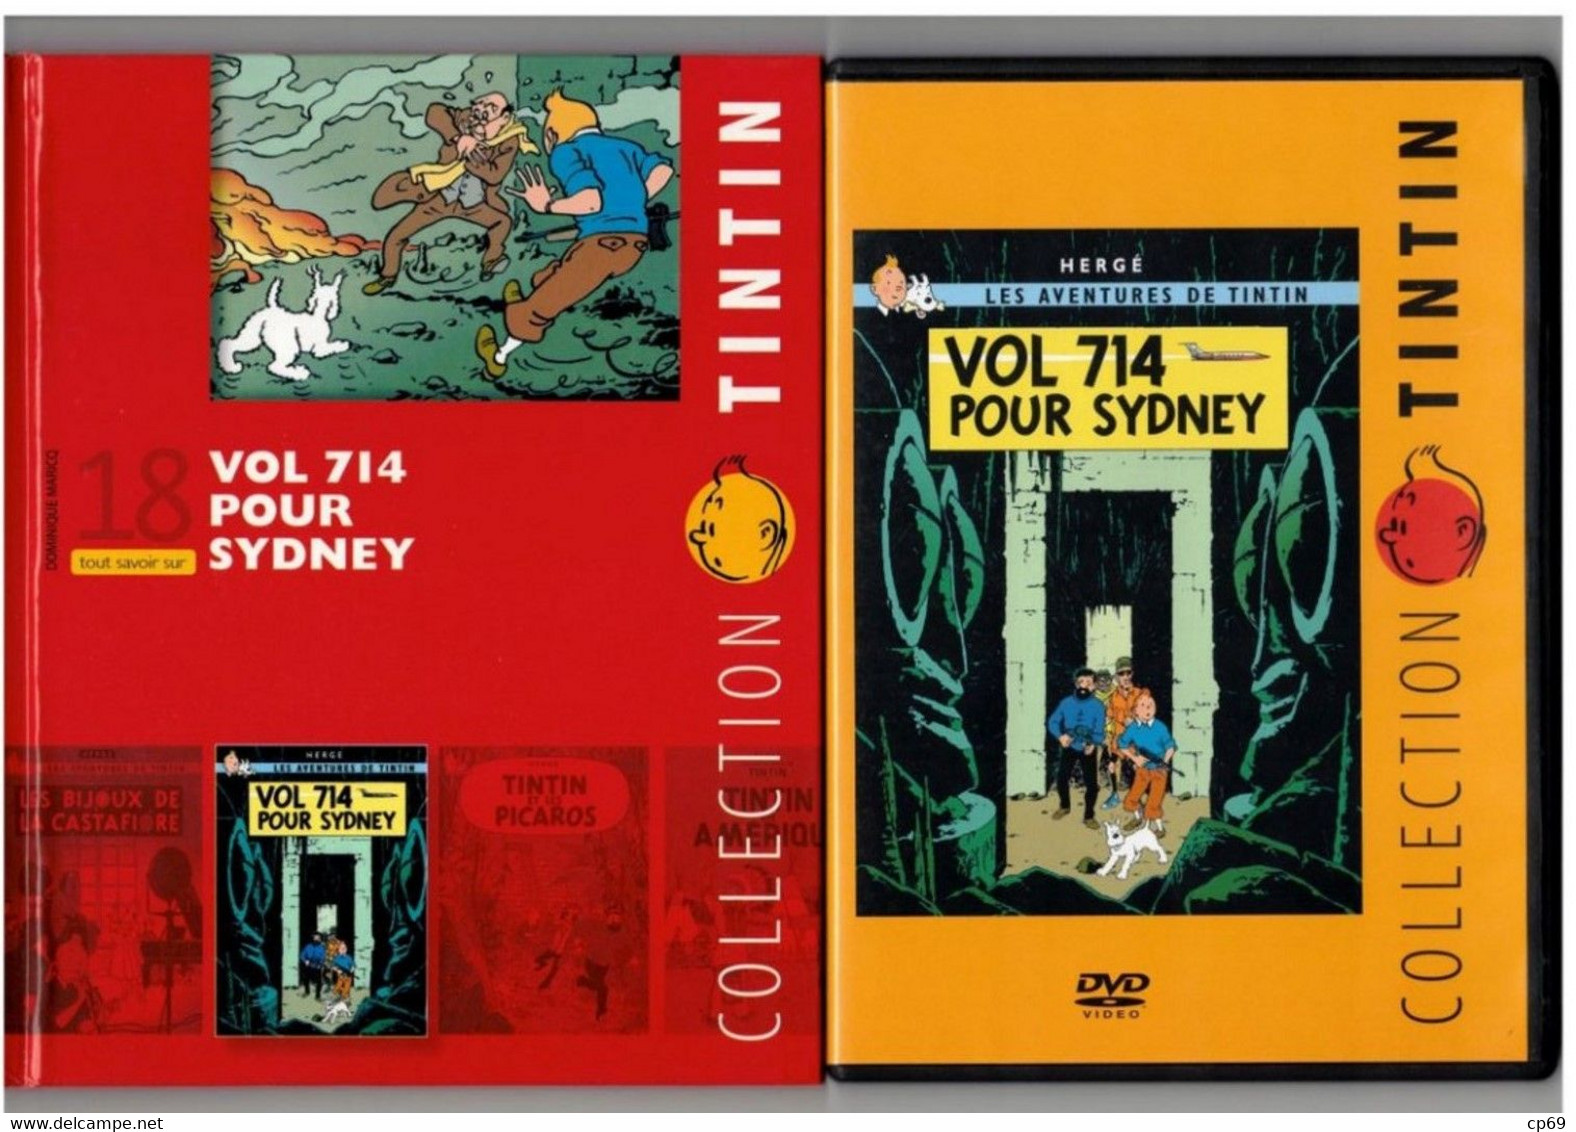 Tintin Hergé/Moulinsart 2010 Milou Chien Dog Cane Vol 714 Pour Sydney N°18 Capitaine Haddock DVD + Livret Explicatif B.E - Cartoons